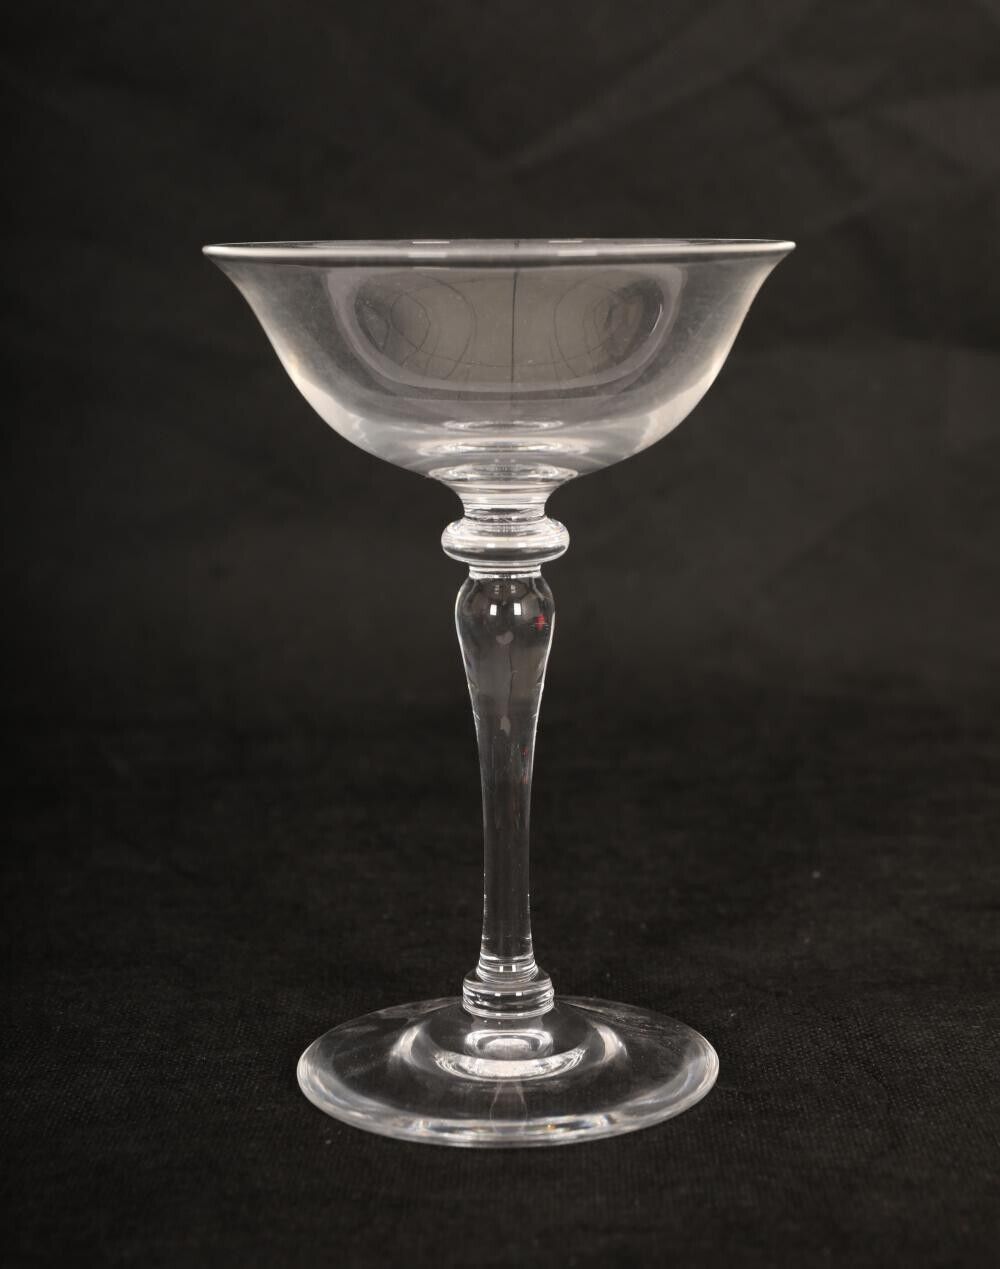 Exquisite Vintage Steuben Crystal Champagne/Sherbet Glasses 6401 - Set of 8